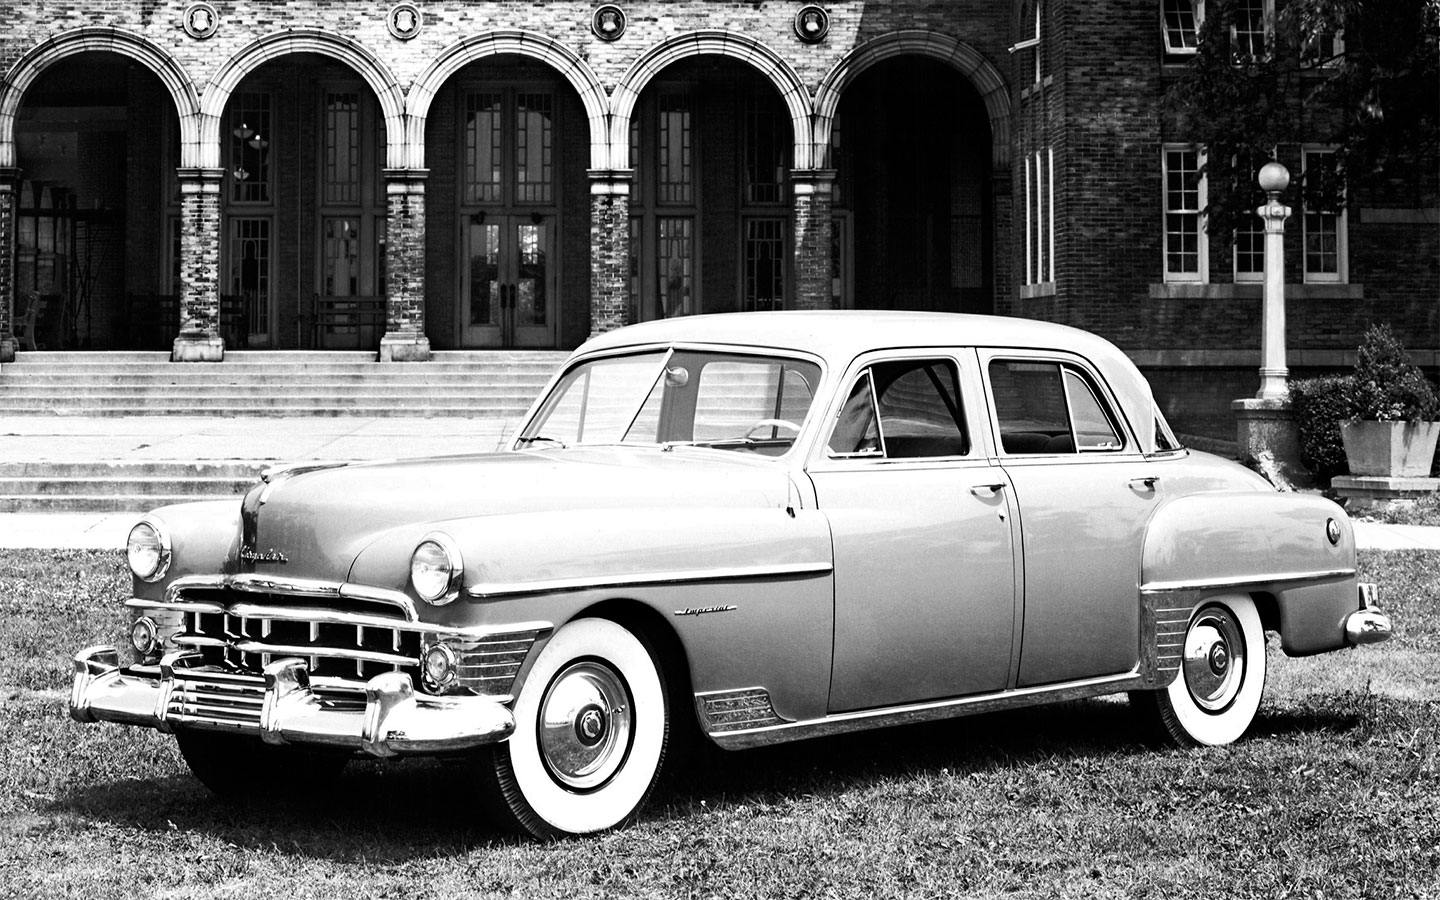 Первым серийным легковым авто с гидроусилителем считается Chrysler Imperial 1951 года